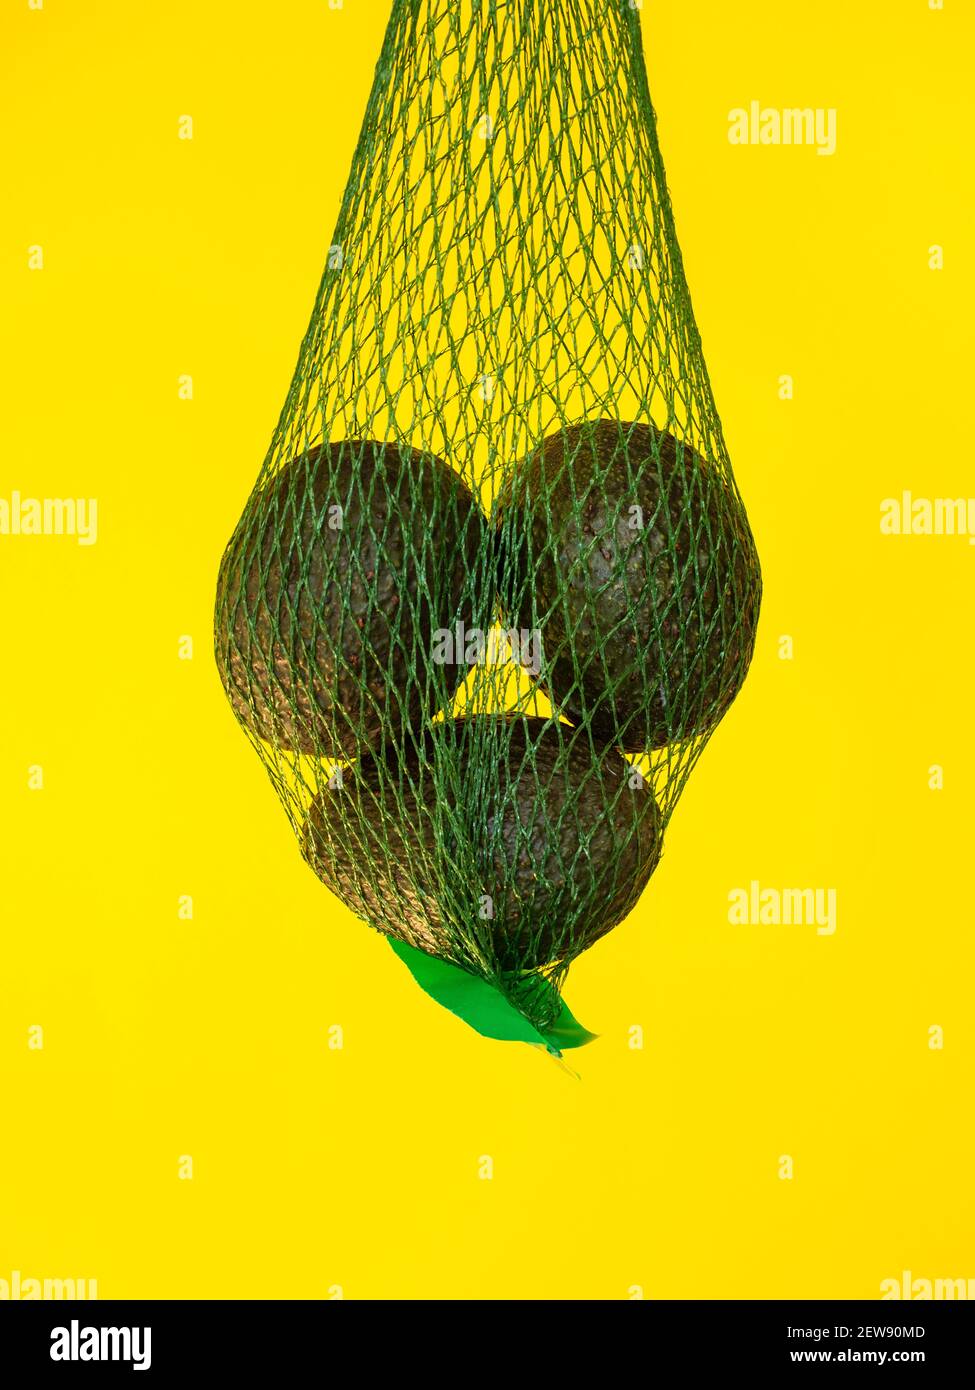 Aguacates en una red verde aislada y suspendida en el aire con un fondo amarillo en el estudio Foto de stock